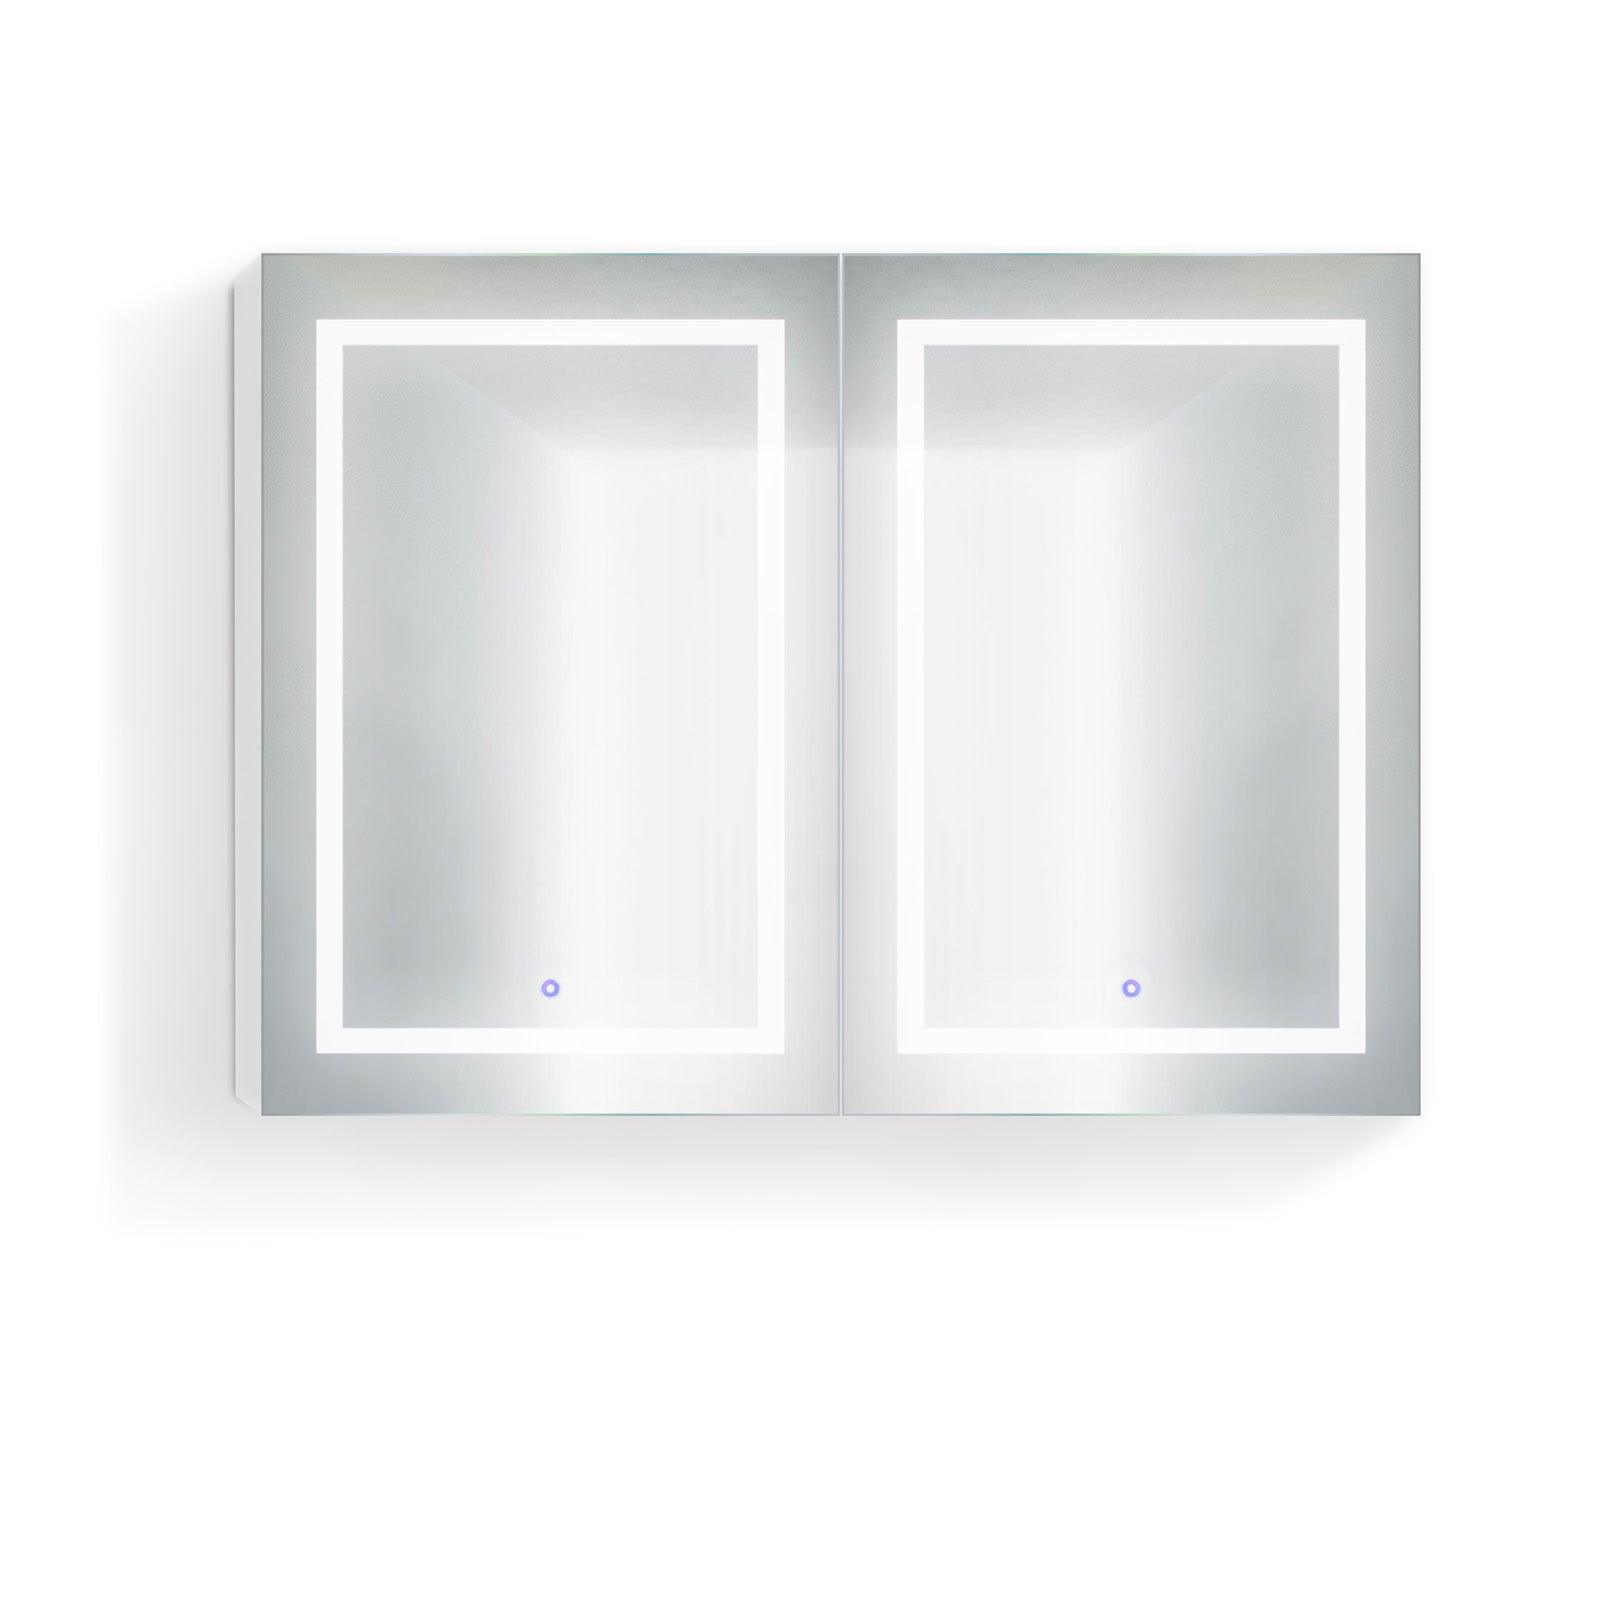 Krugg Svange 48″ X 36″ Double LED Medicine Cabinet w/Dimmer & Defogger